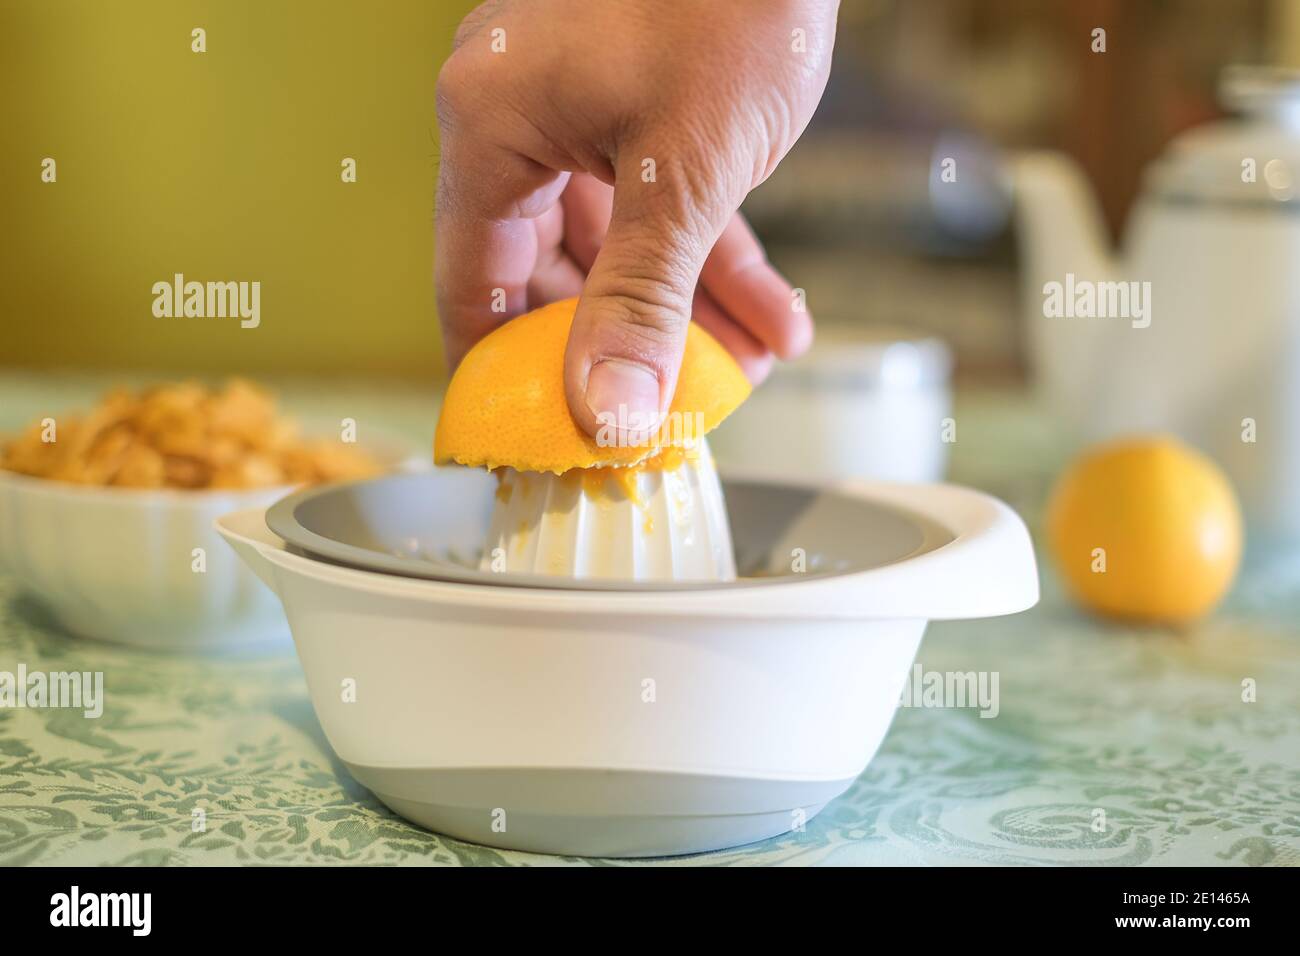 Mann quetscht frisches Orangenobst auf dem Entsafter, gesundes Essen Frühstück, morgendliche Diät Stockfoto